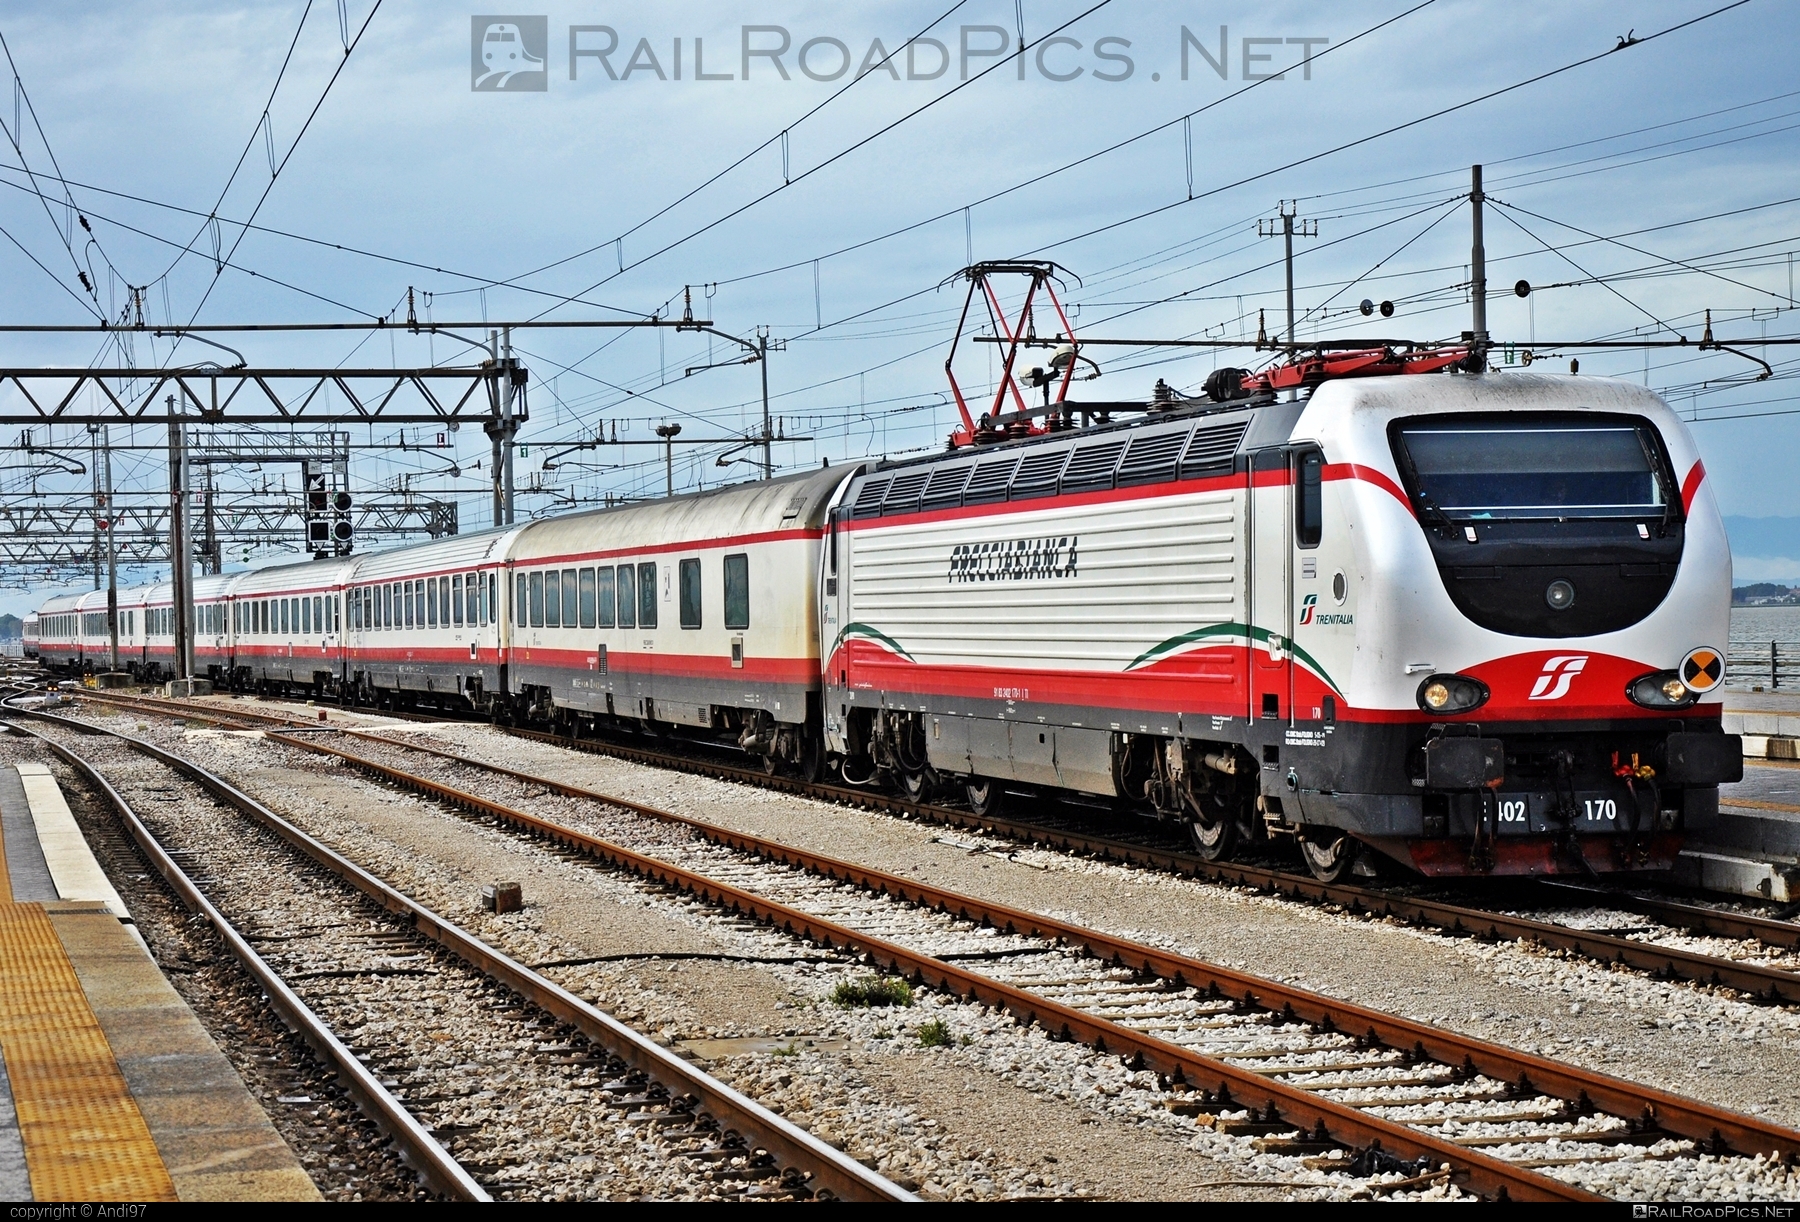 Ansaldo Trasporti Class E.402B - 402 170 operated by Trenitalia S.p.A. #ansaldo402 #ansaldoE402 #ansaldoE402b #ansaldoTrasporti #e402 #e402b #ferroviedellostato #frecciabianca #fs #fsClassE402 #fsClassE402B #fsitaliane #lefrecce #pininfarina #trenitalia #trenitaliaspa